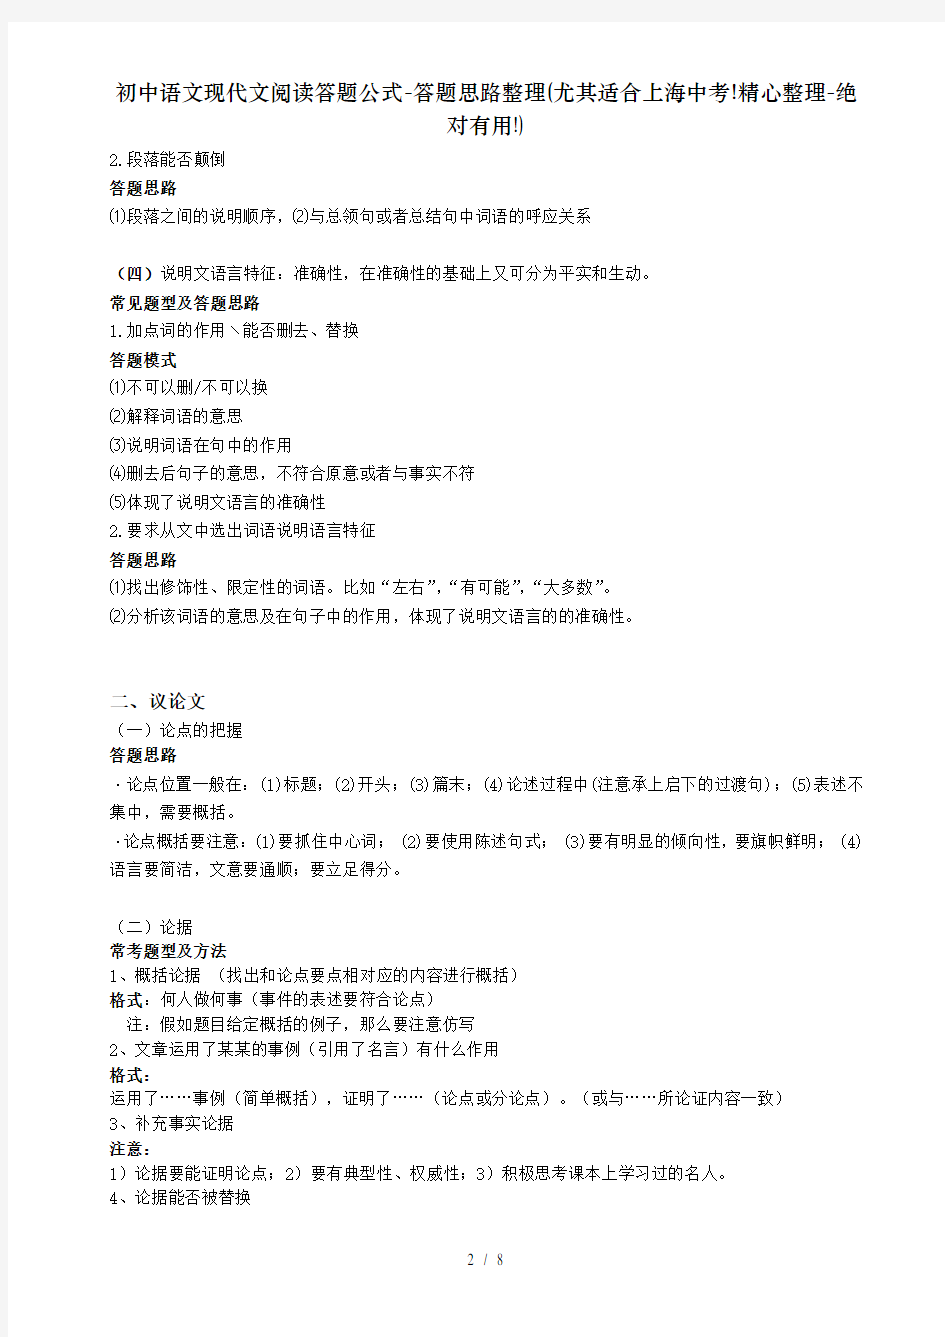 初中语文现代文阅读答题公式-答题思路整理(尤其适合上海中考!精心整理-绝对有用!)